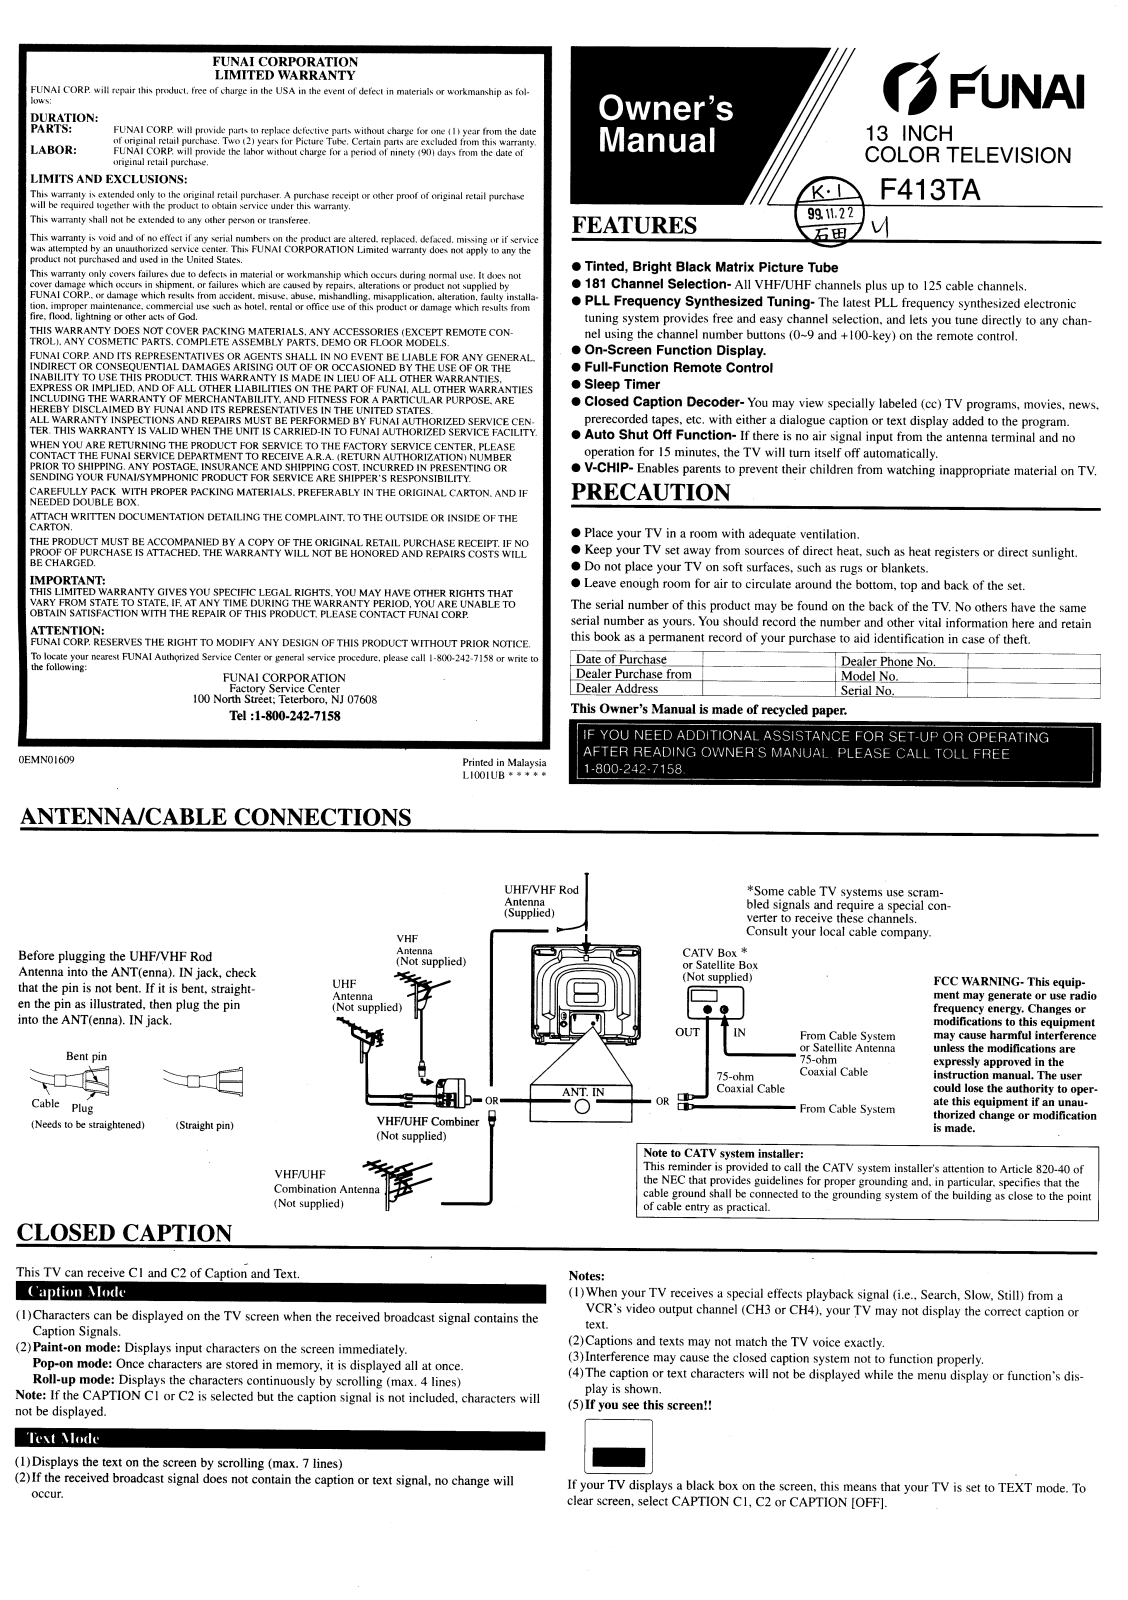 FUNAI F413TA User Manual